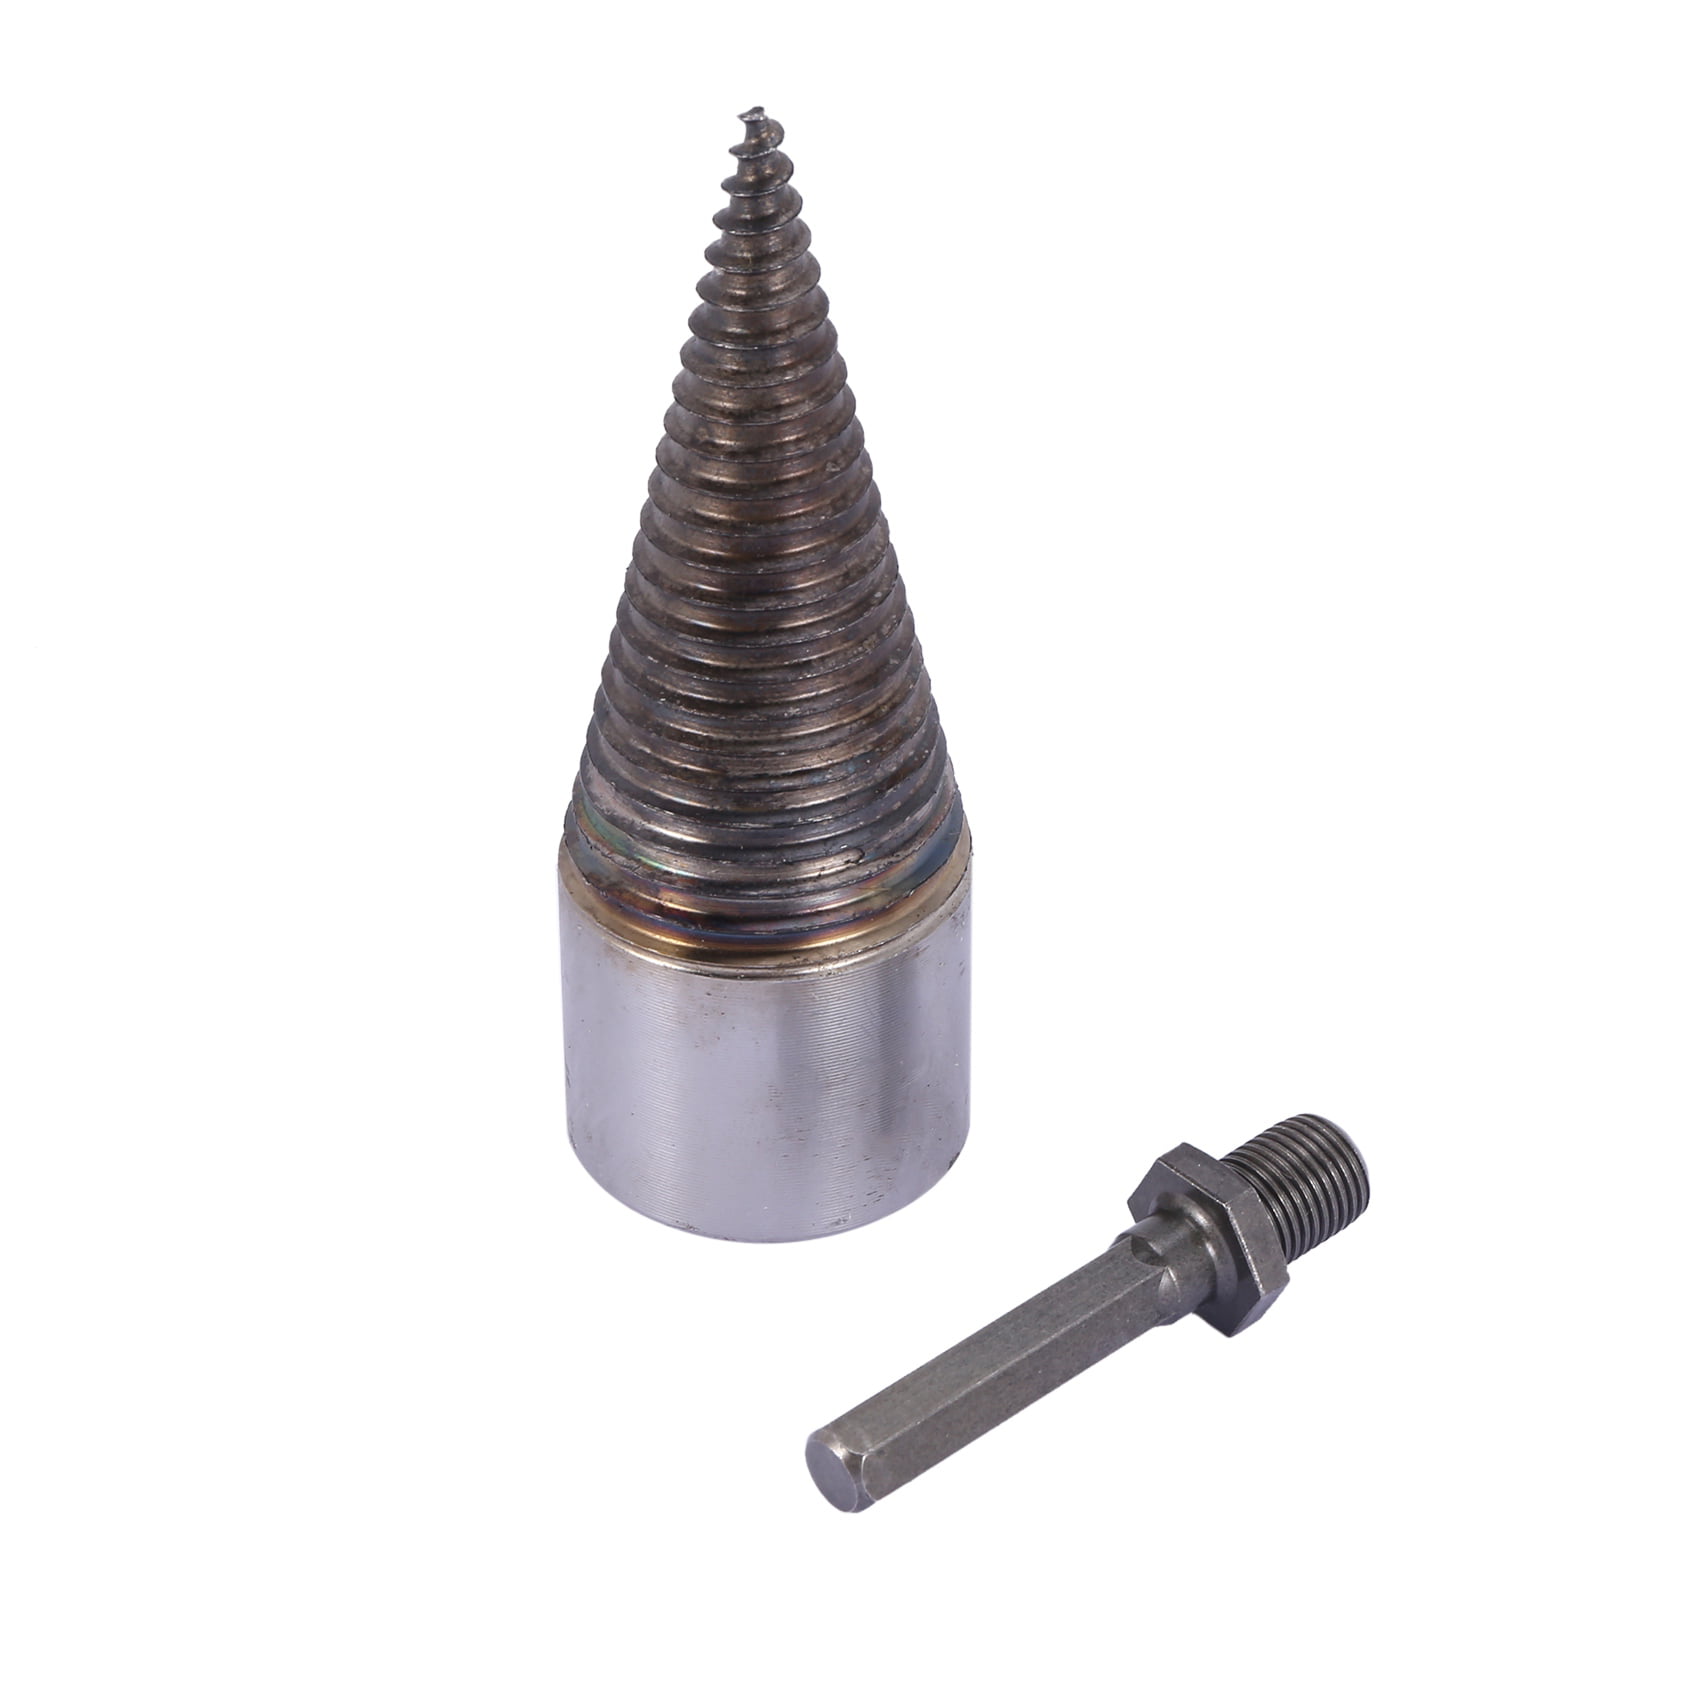 Details about   3 Handle Screw Thread Splitting Cone Twist 42mm Firewood Drill Bit Splitter HQ 